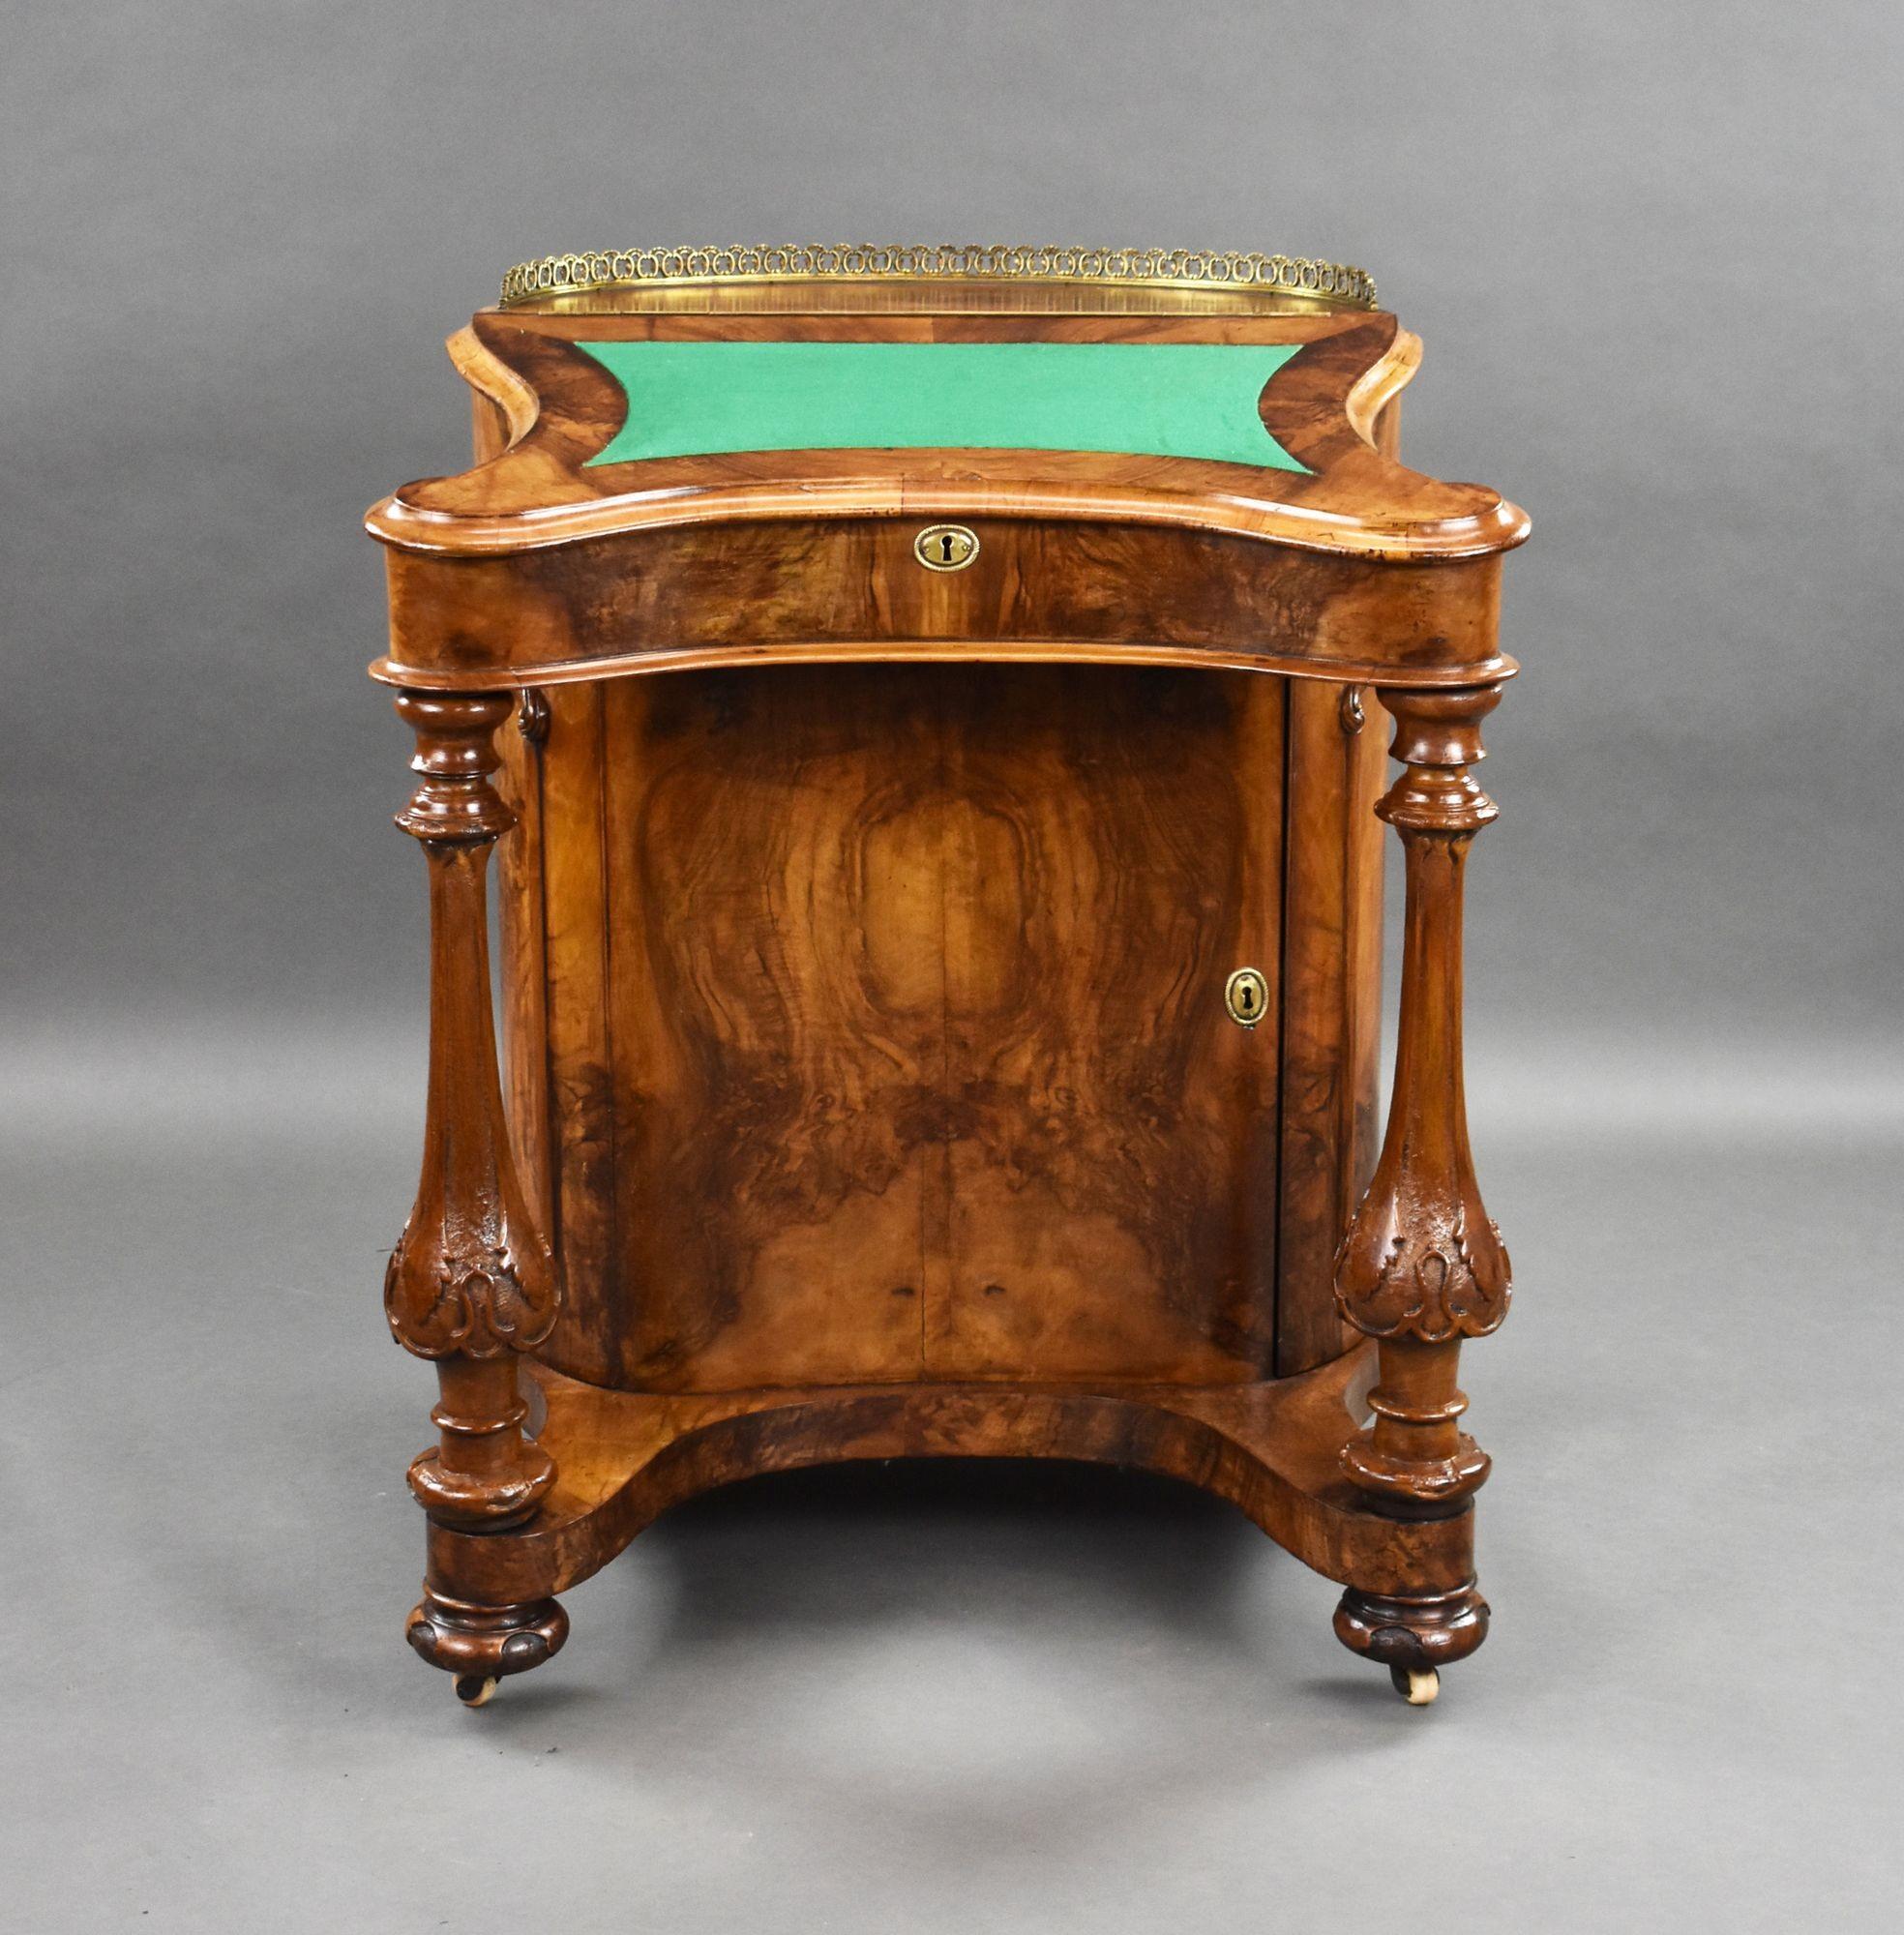 Zum Verkauf steht ein hochwertiger viktorianischer Tisch aus Wurzelnussholz in ungewöhnlicher Form, mit einer Messing-Galerie über einer Schreibfläche aus grüner Baise und einem Klappdeckel, der zu einem Innenraum mit drei falschen Schubladen und